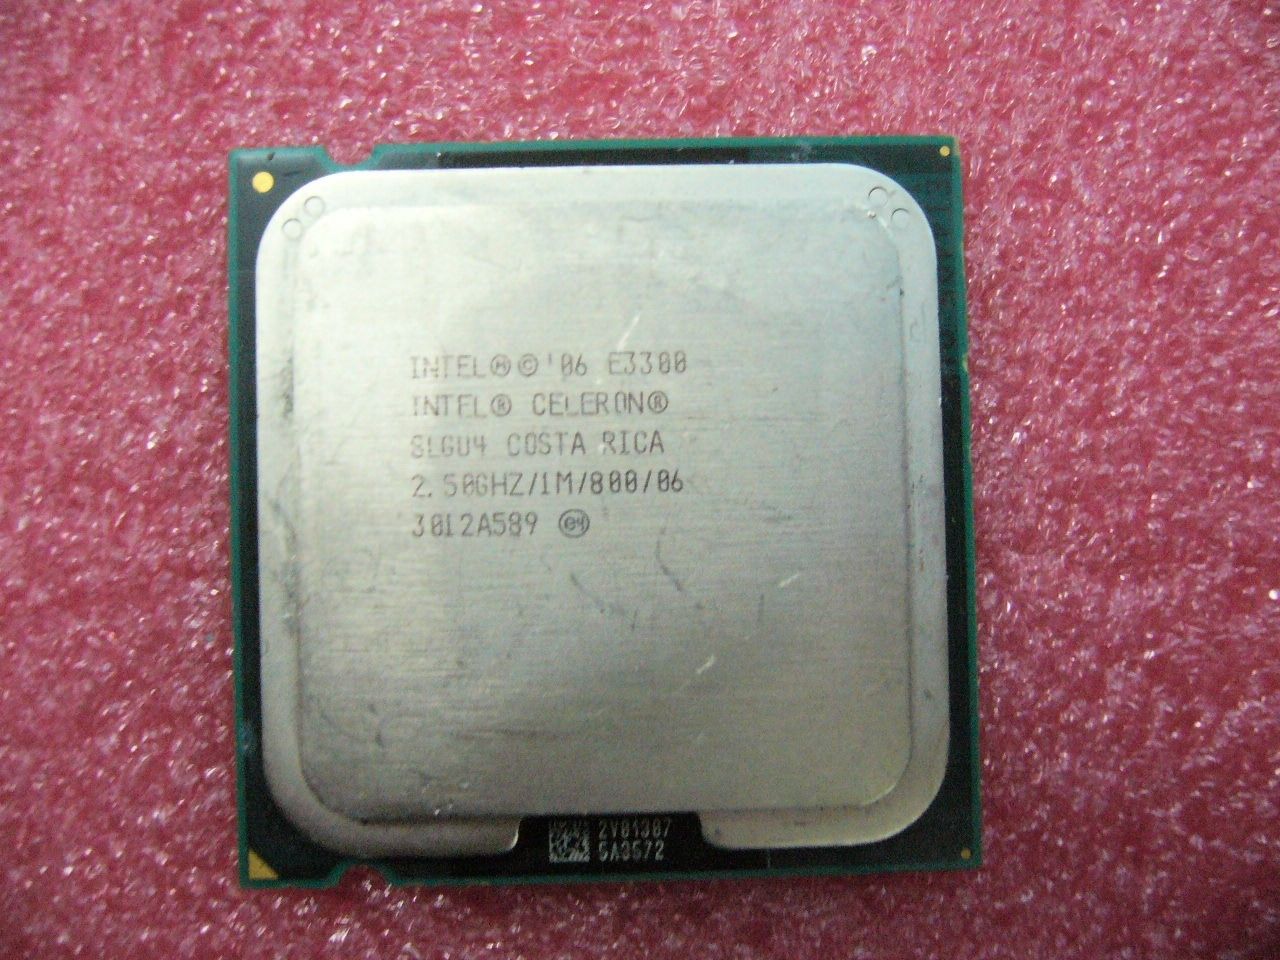 QTY 1x INTEL Celeron E3300 CPU 2.5GHz/1MB/800Mhz LGA775 SLGU4 - zum Schließen ins Bild klicken